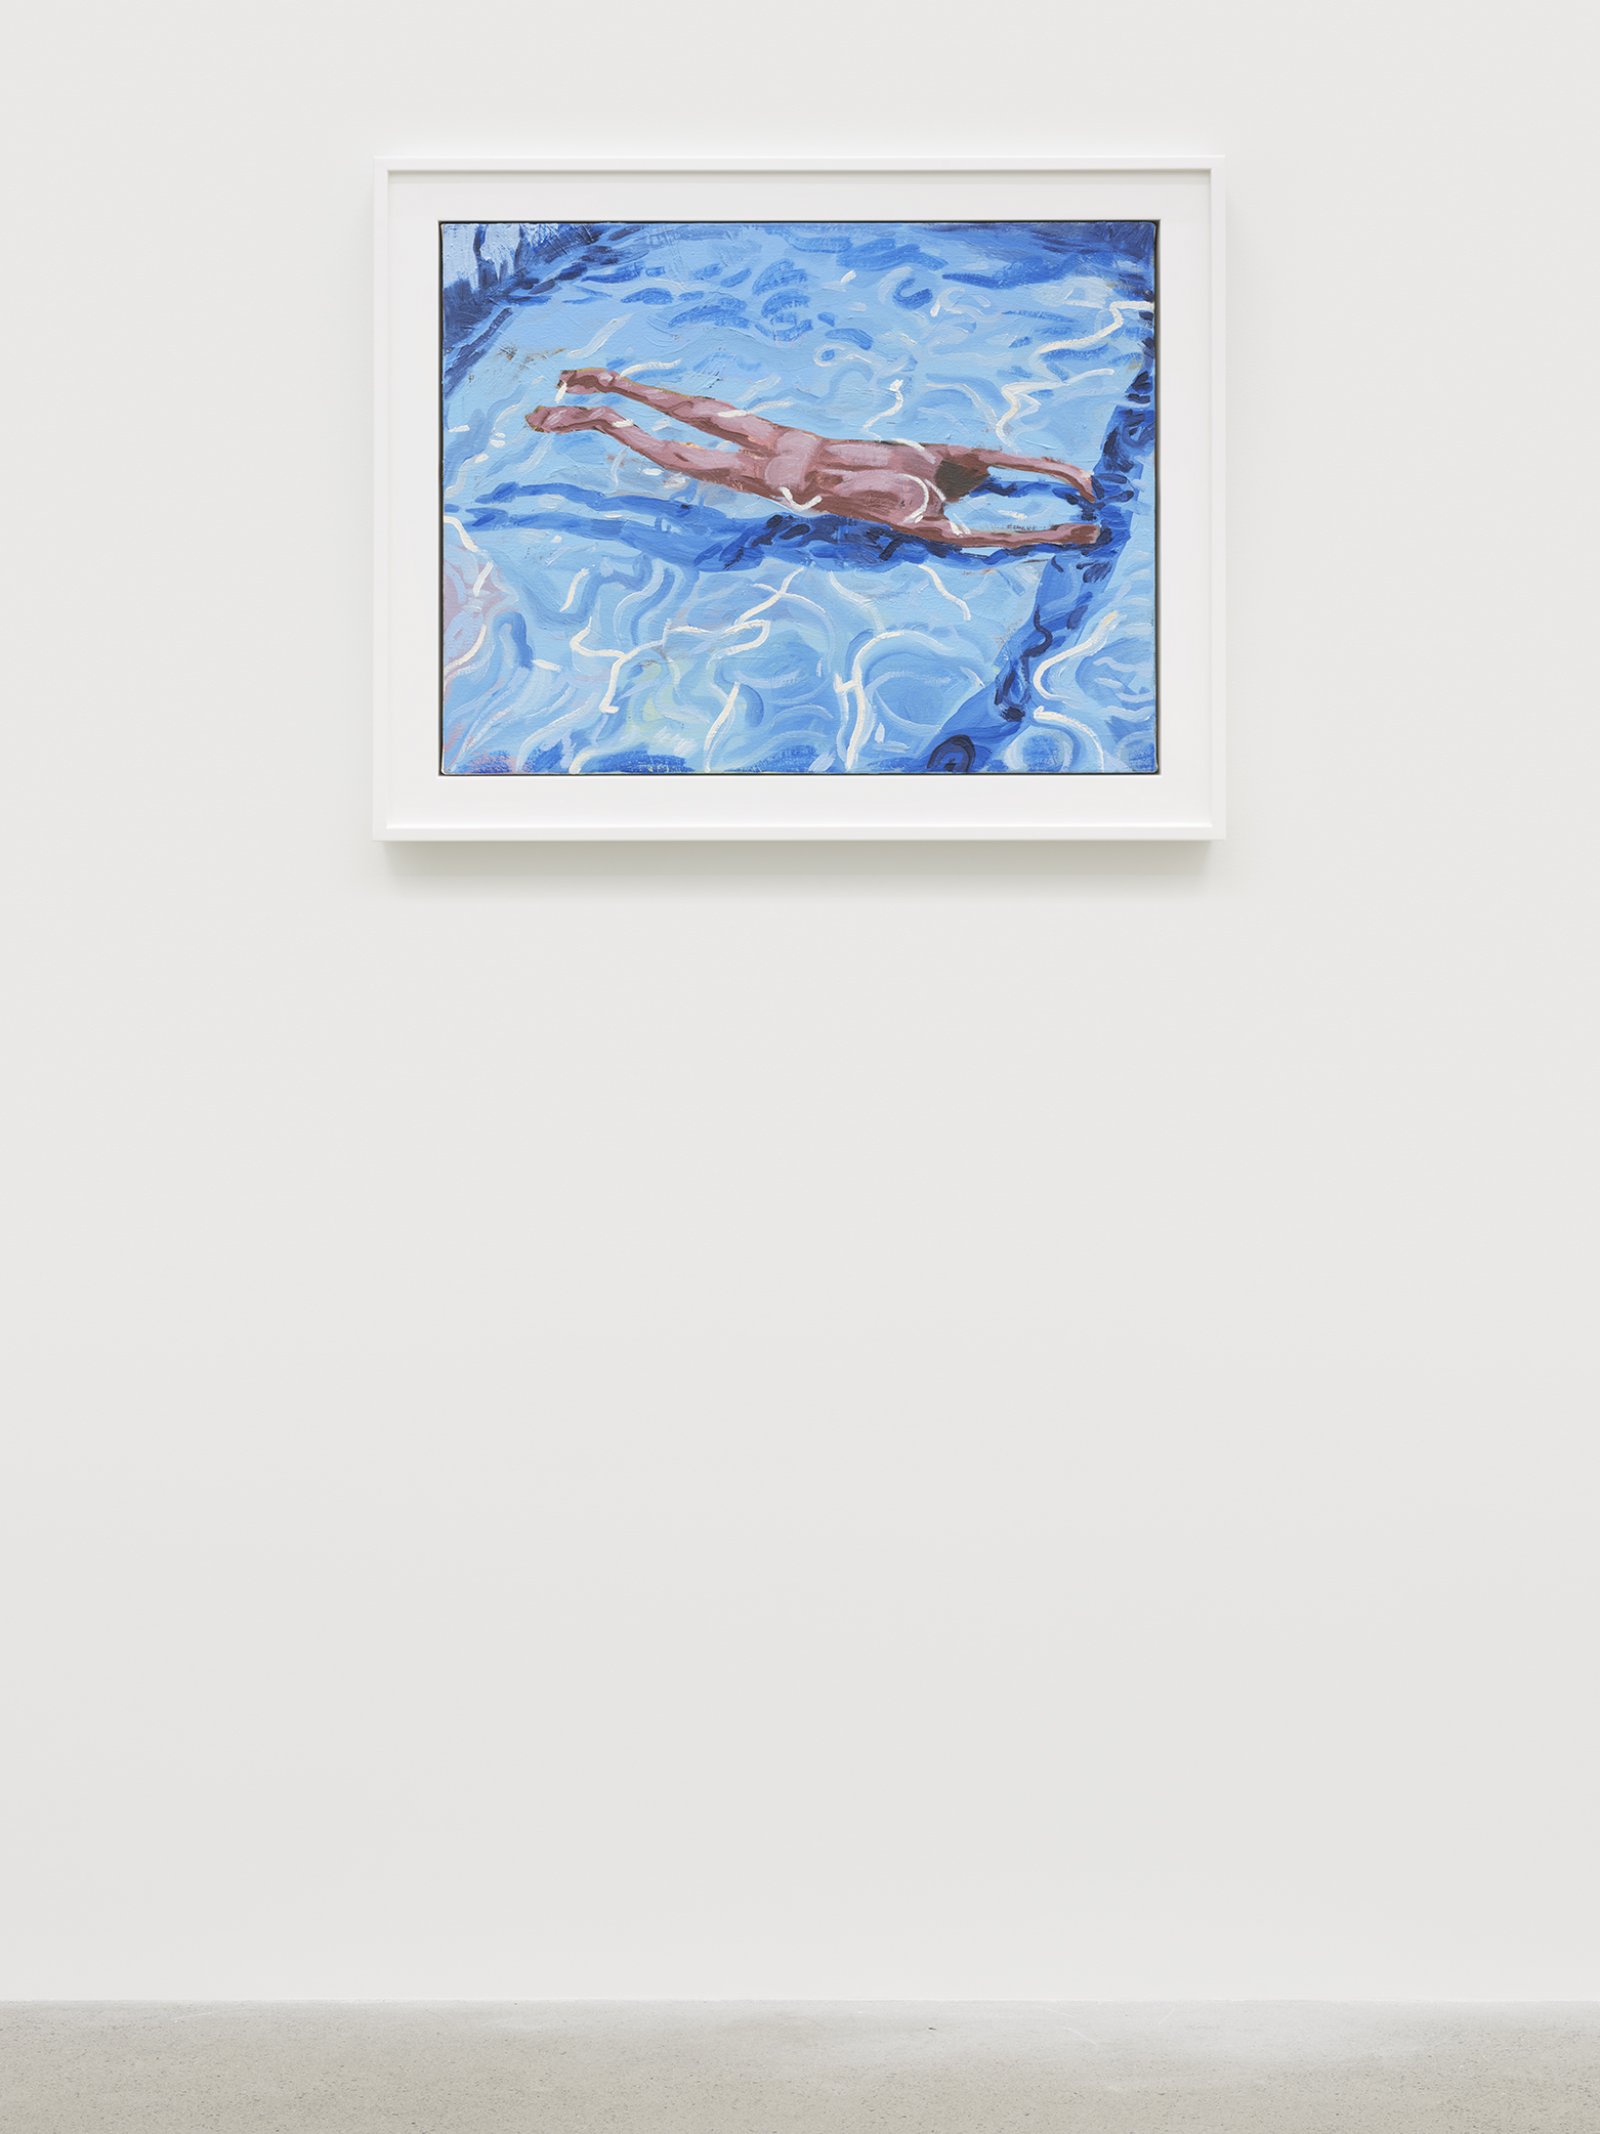 ​Damian Moppett, Untitled (Blue Pool), 2020, oil on canvas, 20 x 25 in. (51 x 64 cm) by Damian Moppett